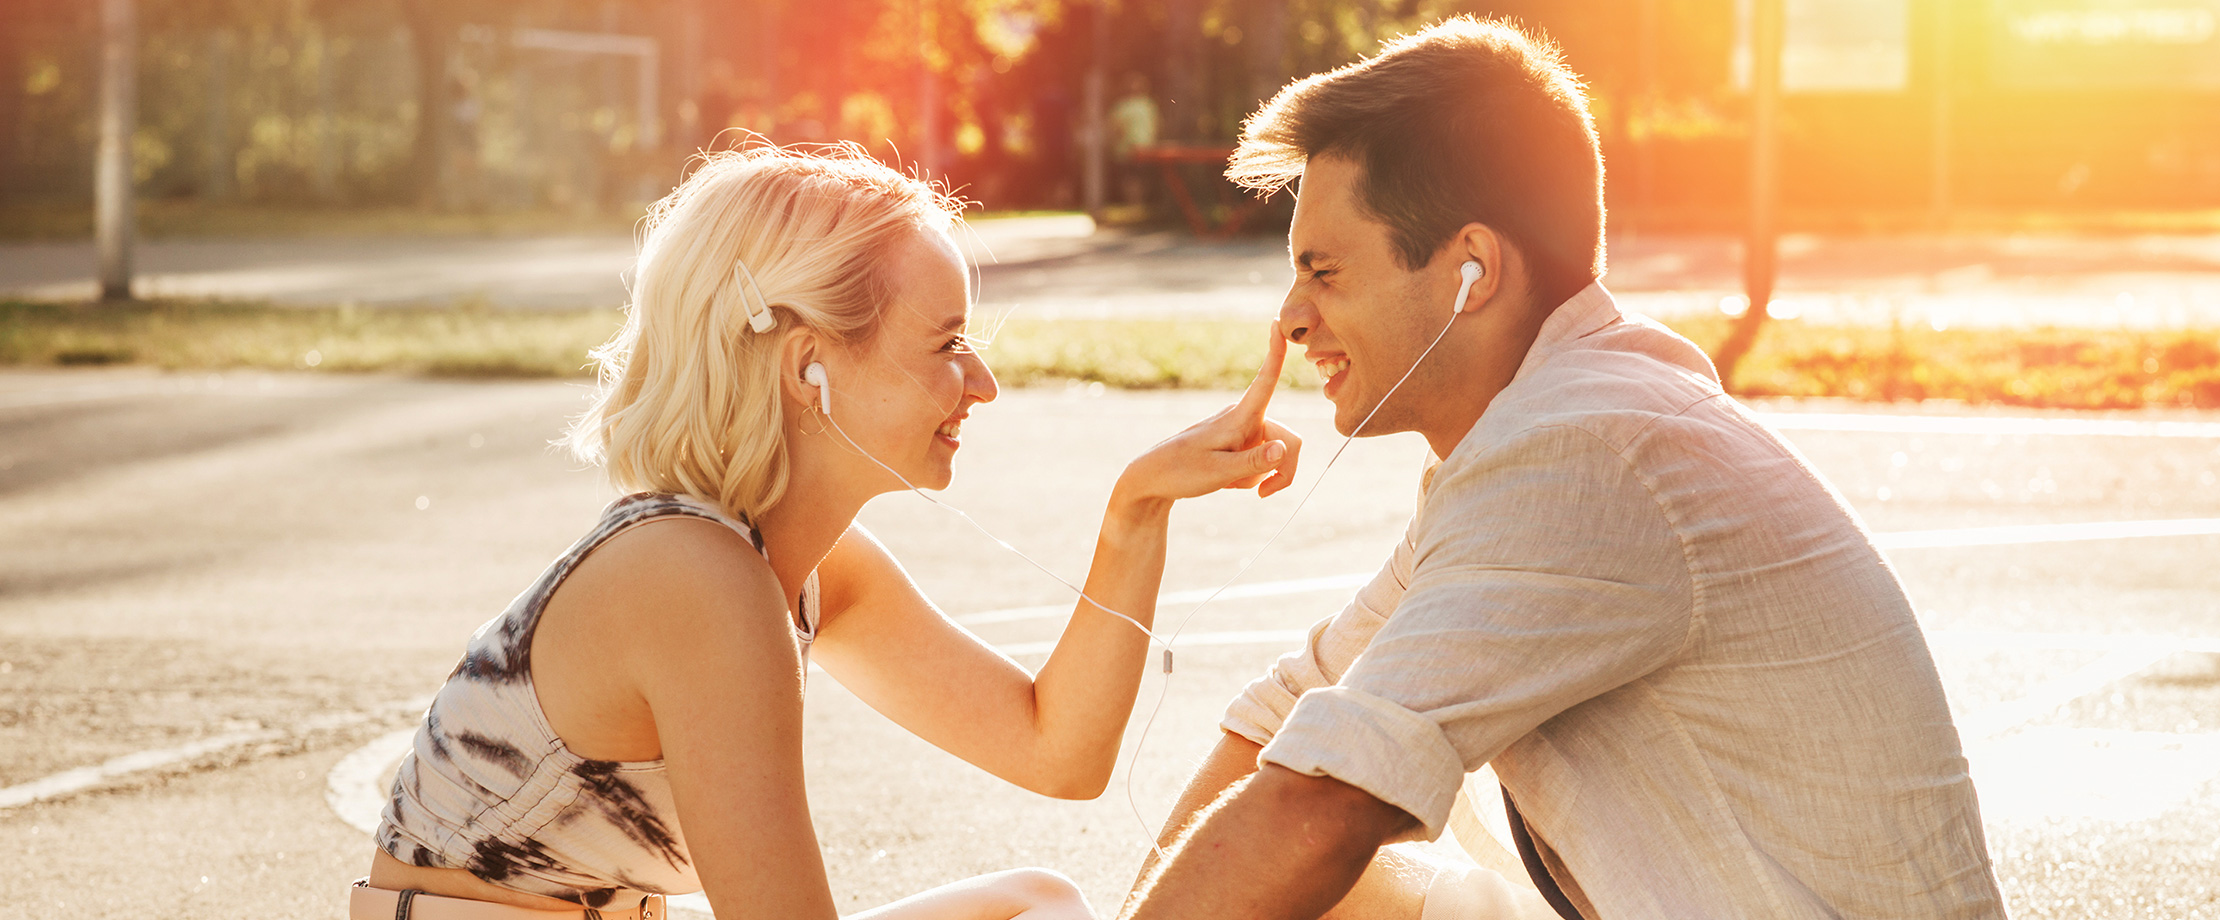 Ein junges Paar sitzt in der Abendsonne und lacht sich an, während sie sich Kopfhörer teilen und Musik hören. Die Frau hält scherzhaft ihren Finger auf die Nase des Mannes.